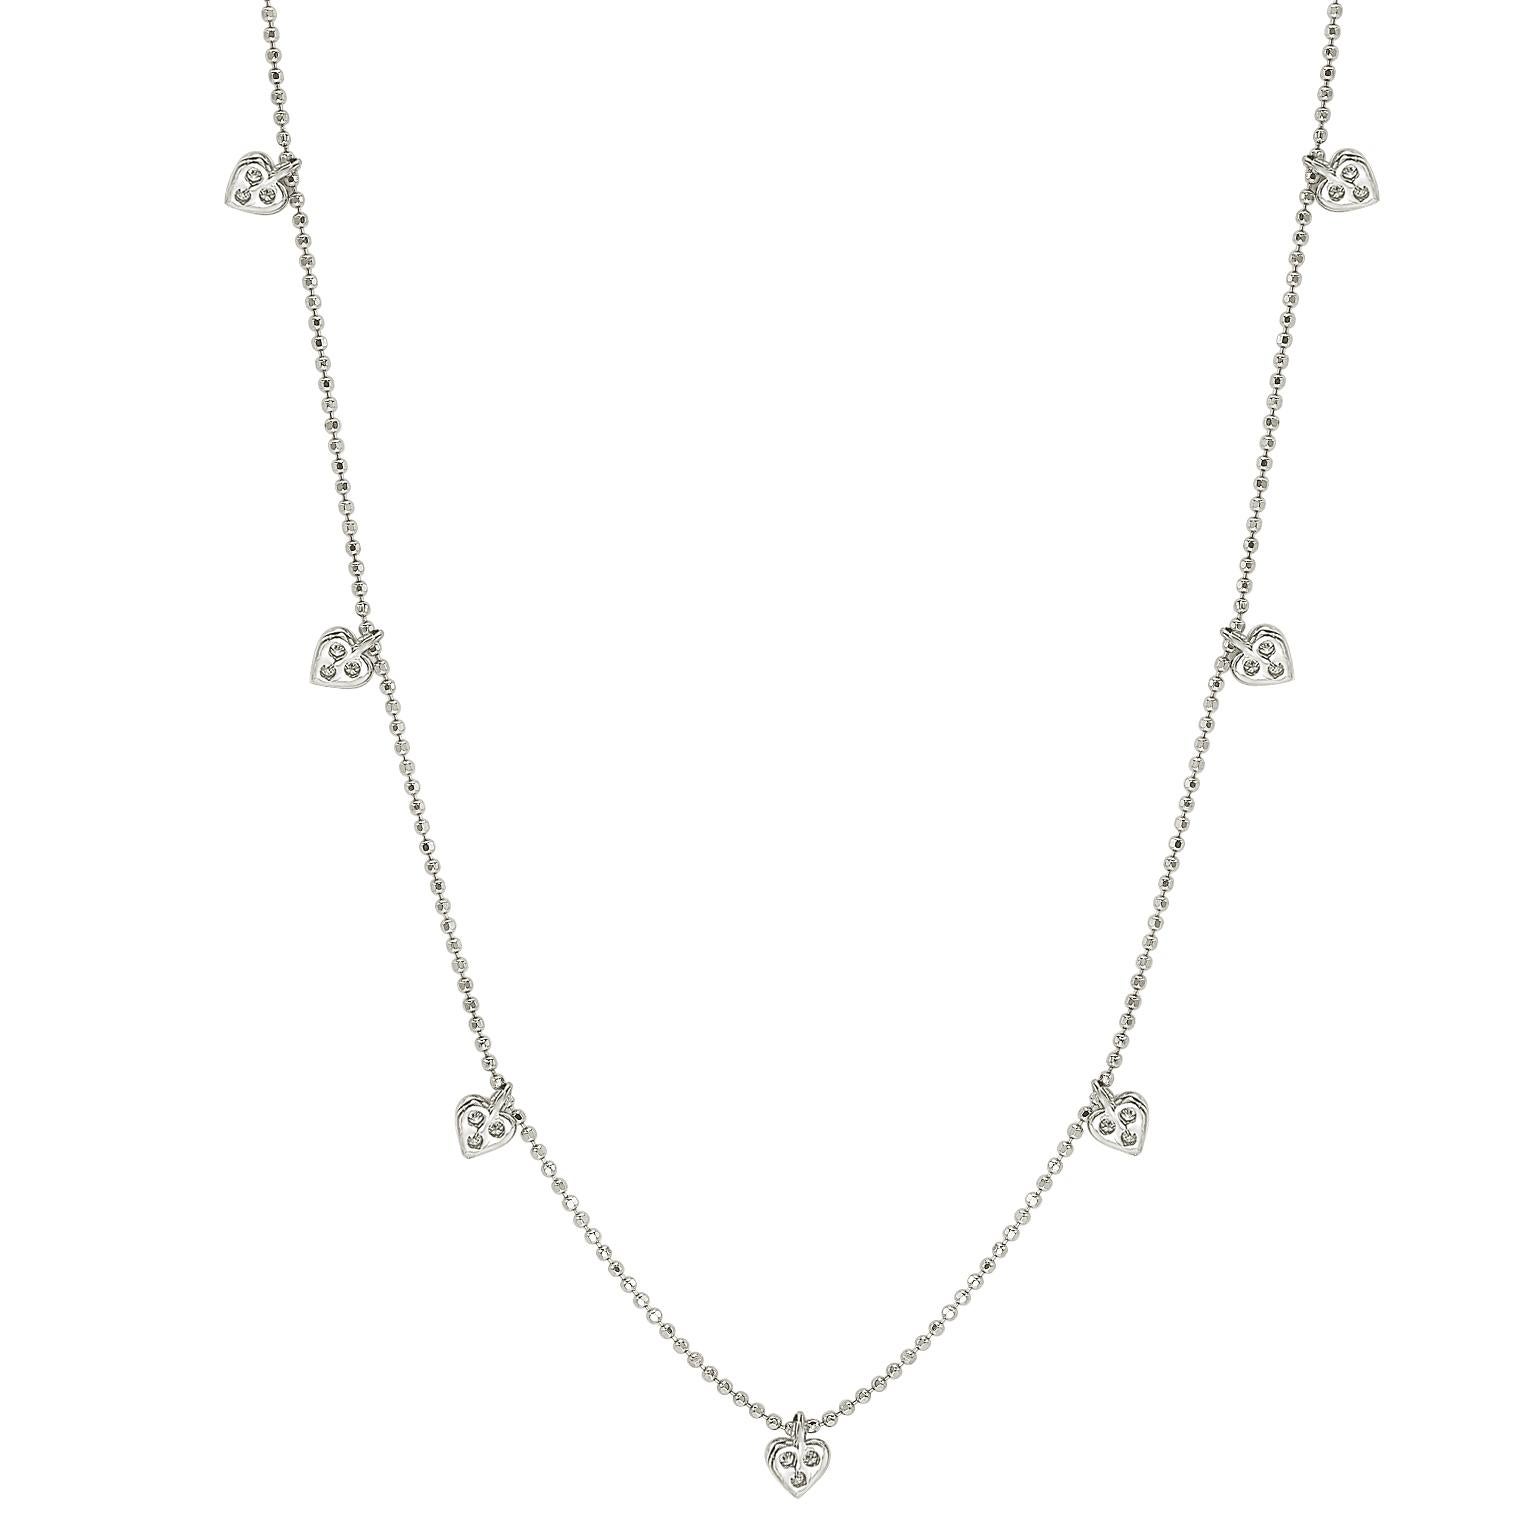 Diese einzigartige Herz-Halskette von Suzy Levian zeigt Diamanten im Rundschliff in einer Fassung aus 14 Karat Weißgold. Diese wunderschöne Halskette enthält 21 weiße Diamanten im Rundschliff mit einem Gesamtgewicht von 0,26cttw. Die Kette besteht